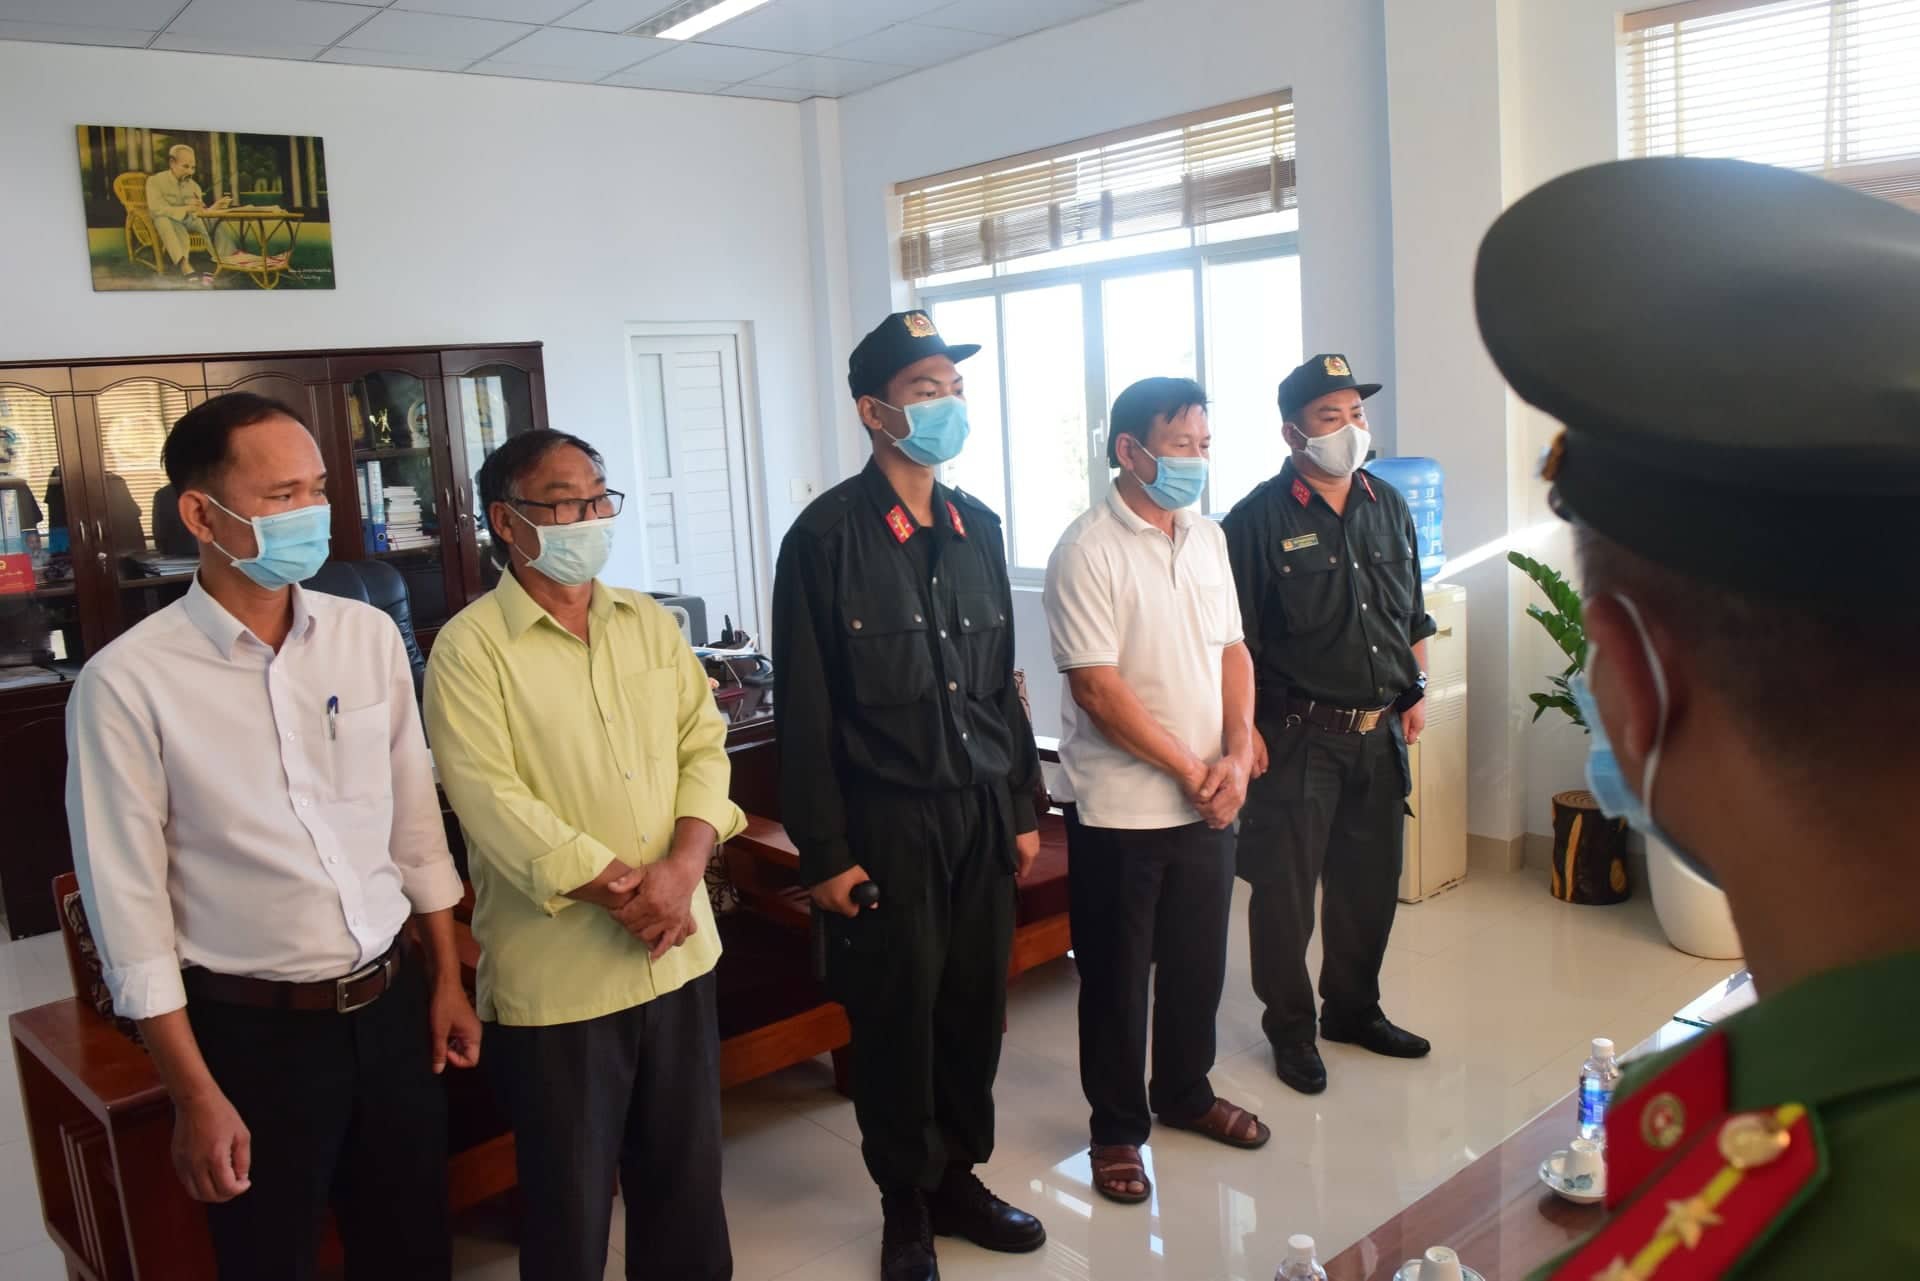 Công an tỉnh Thừa Thiên - Huế chỉ đạo Phòng Anh ninh Kinh tế ra Quyết định khởi tố vụ án “Tham ô tài sản” xảy ra tại Cảng hàng không Quốc tế Phú Bài.